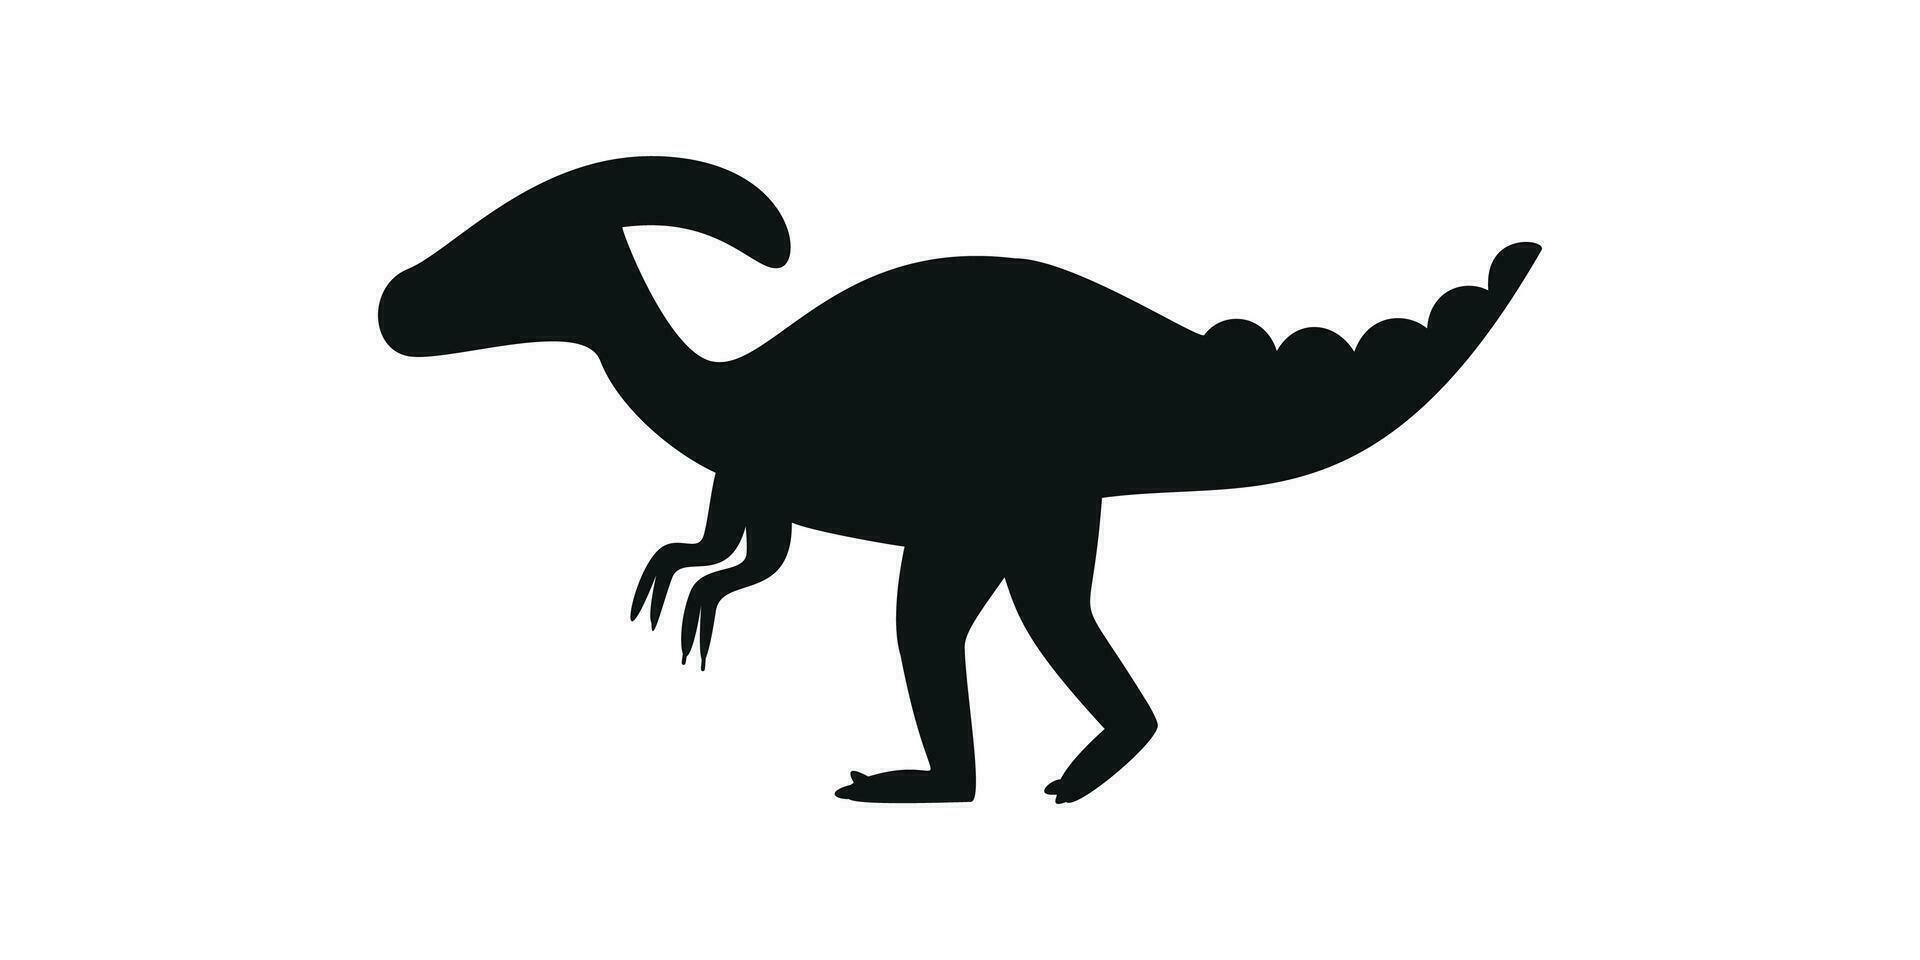 plat vecteur silhouette illustration de parasaurolophus dinosaure